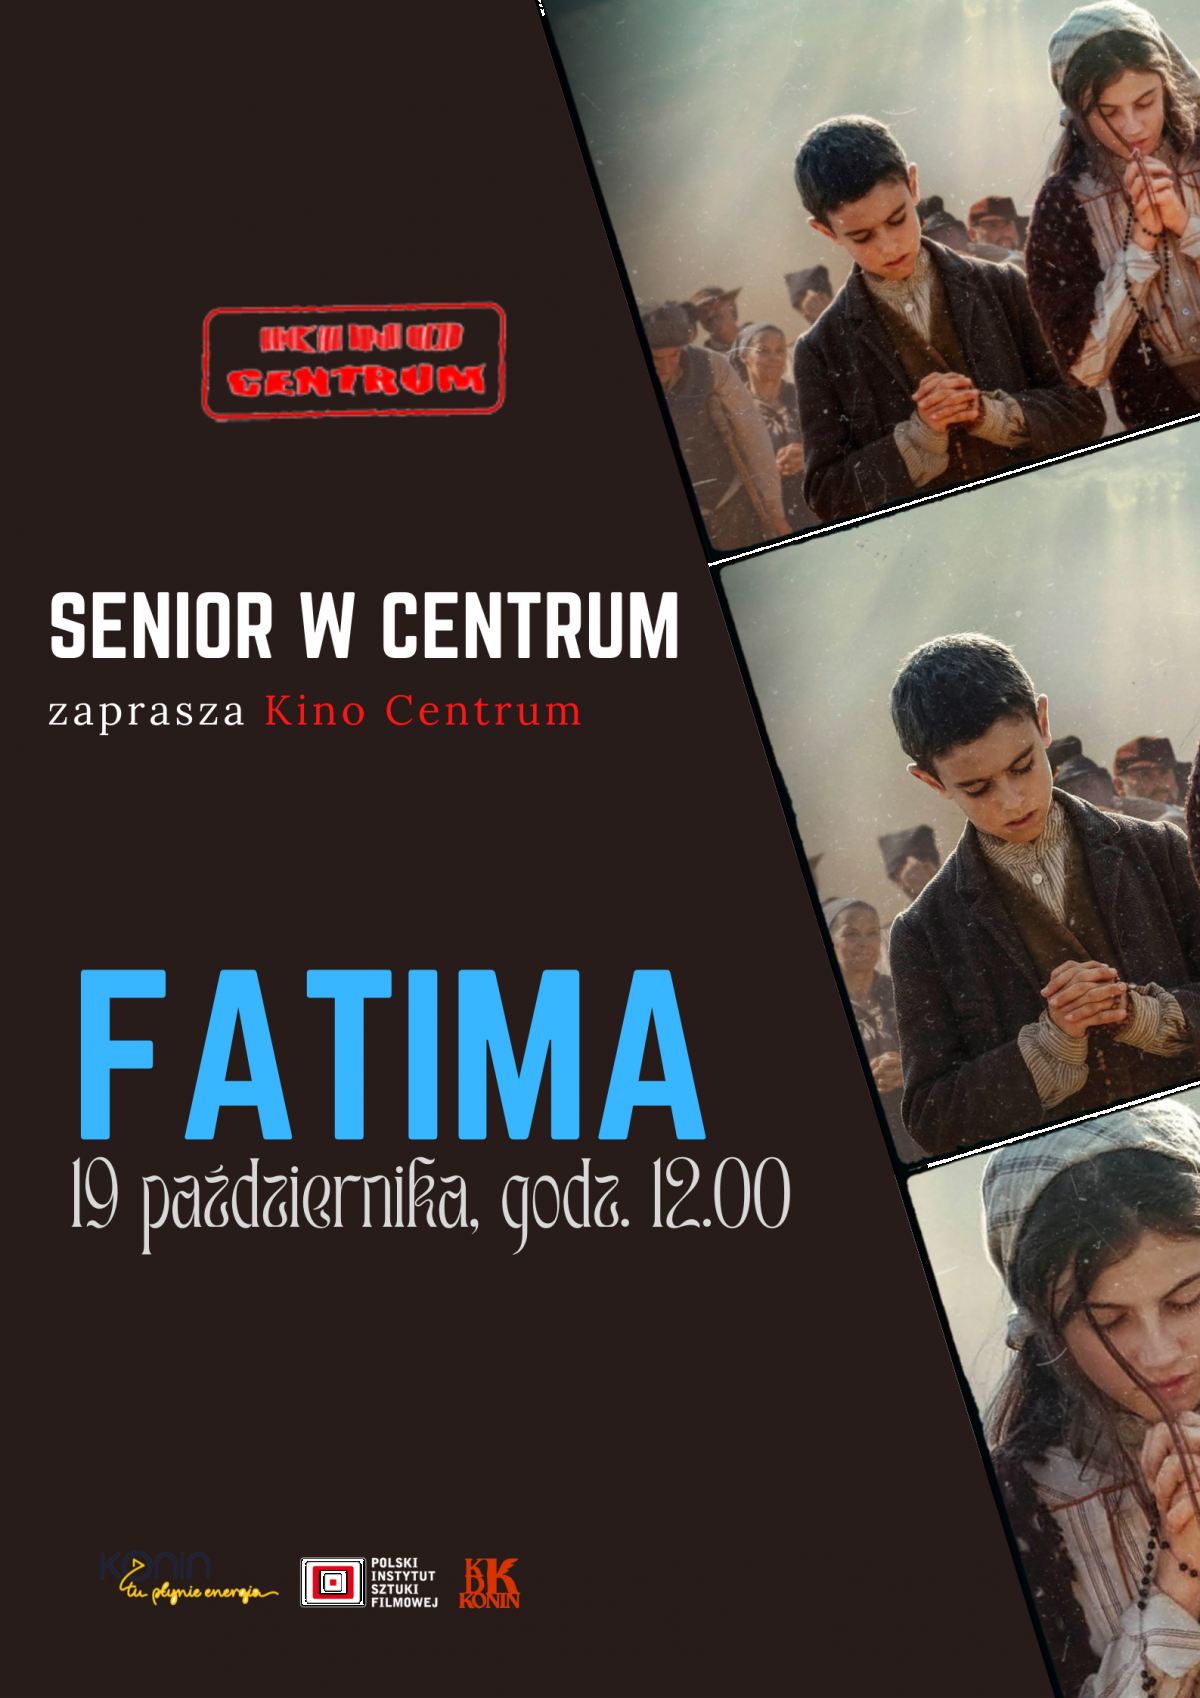 SENIOR W CENTRUM-  " Fatima" w Kinie Centrum